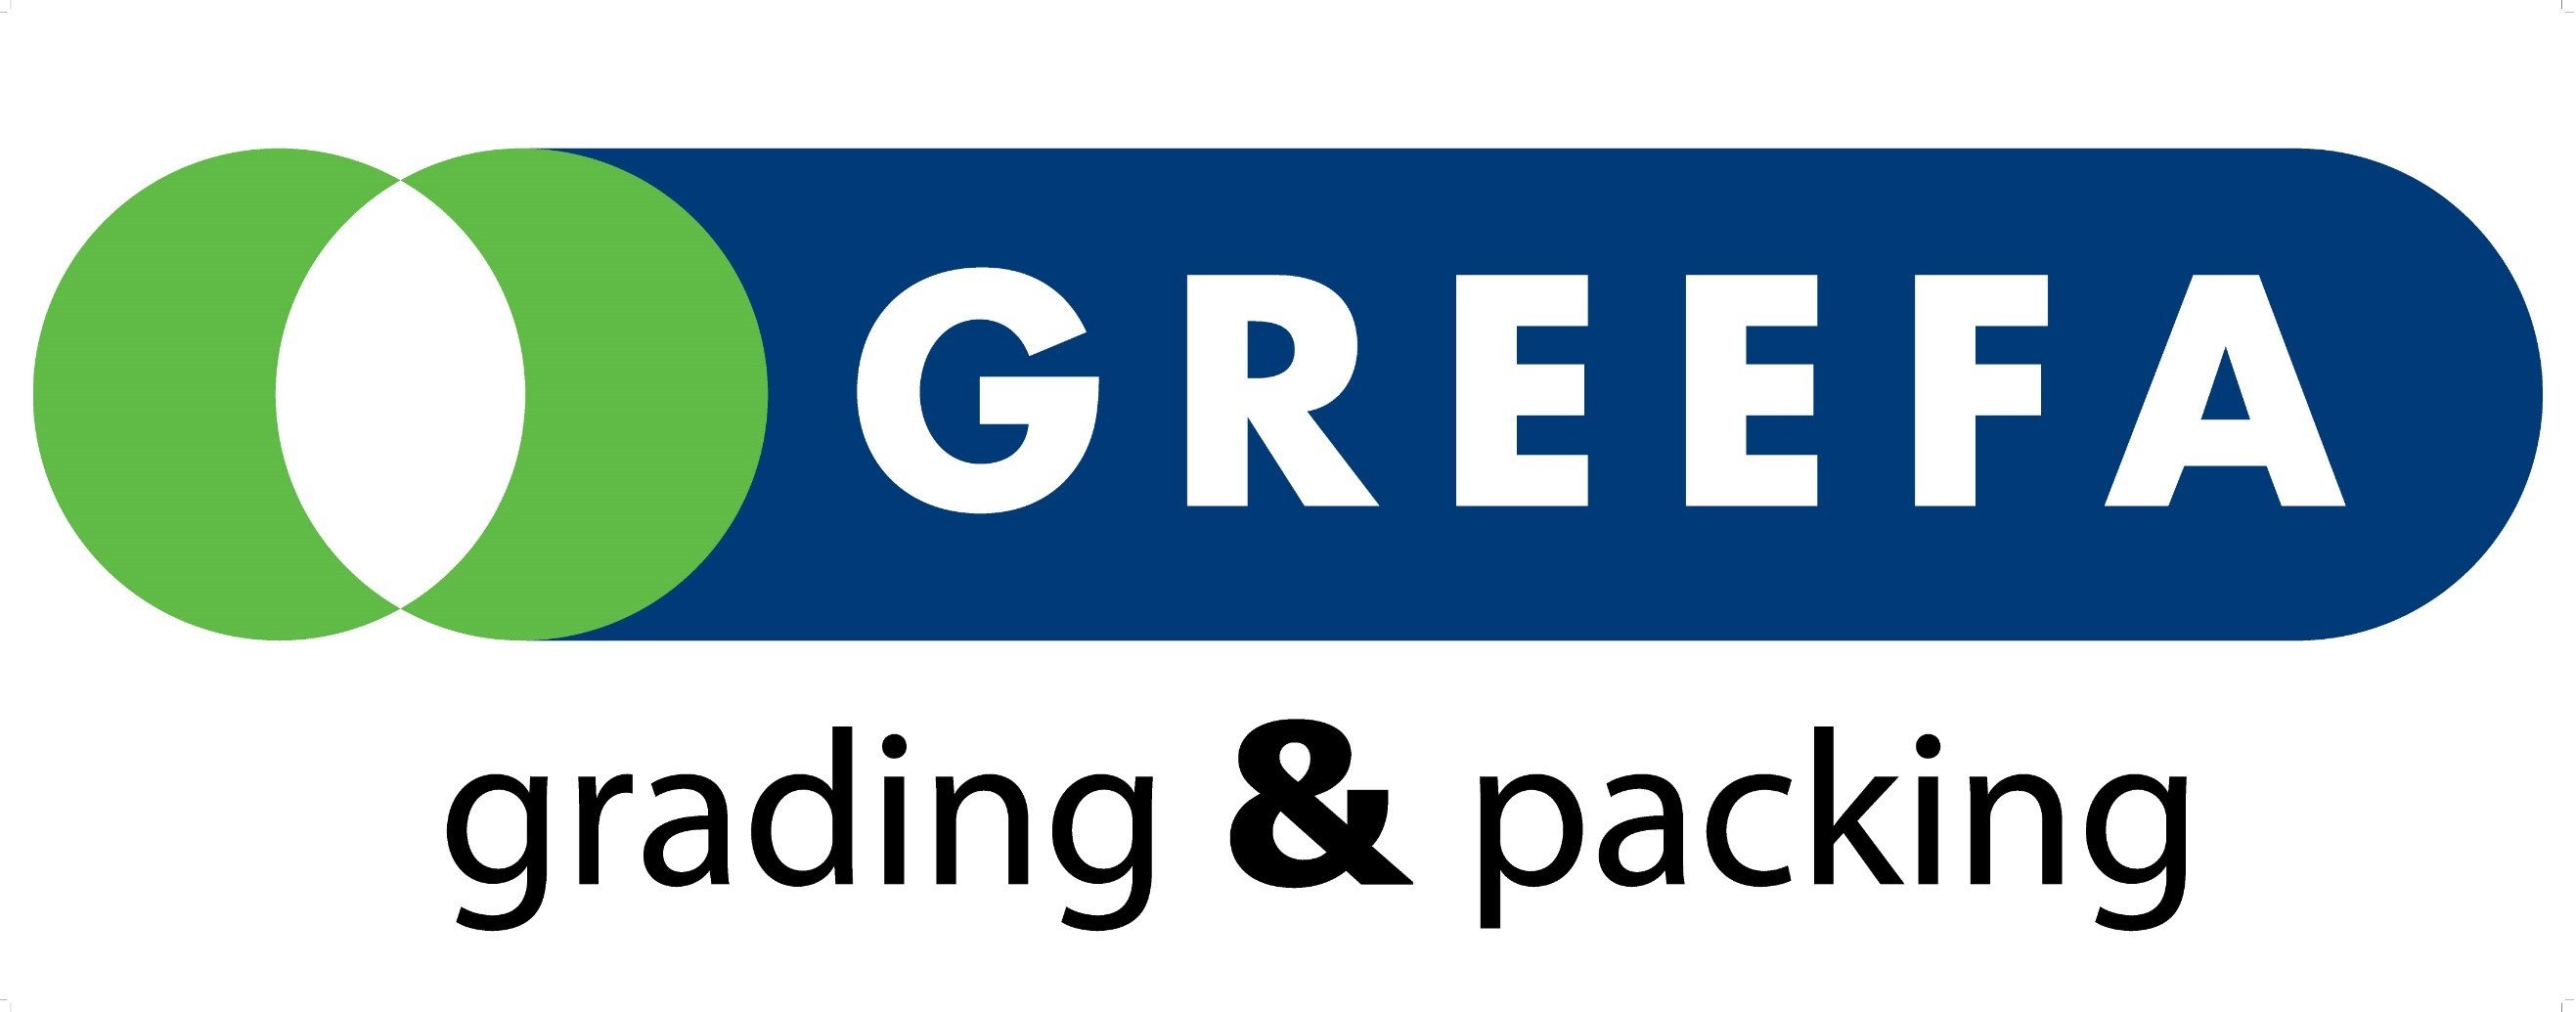 Logo GREEFA.jpg